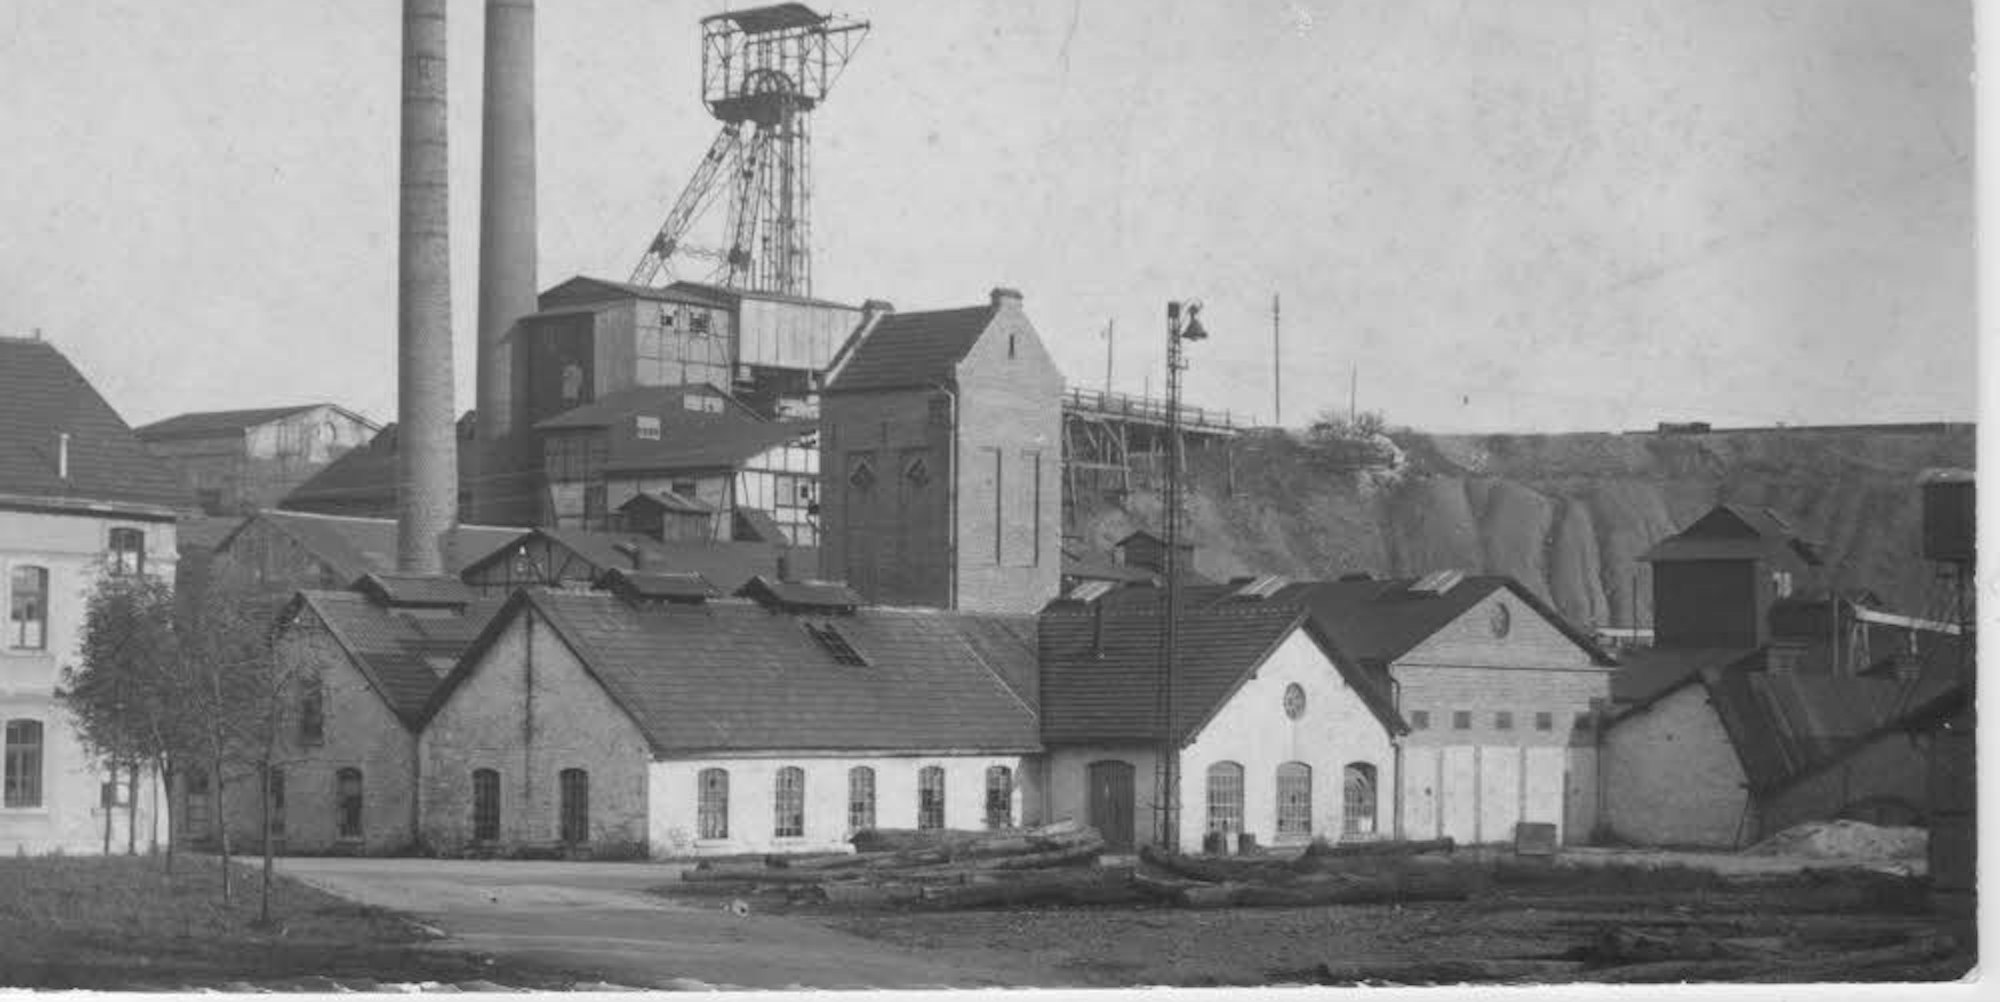 Die Grube Weiß um 1917: links das Verwaltungsgebäude, oben links das Maschinenhaus, mittig die Trafostation.